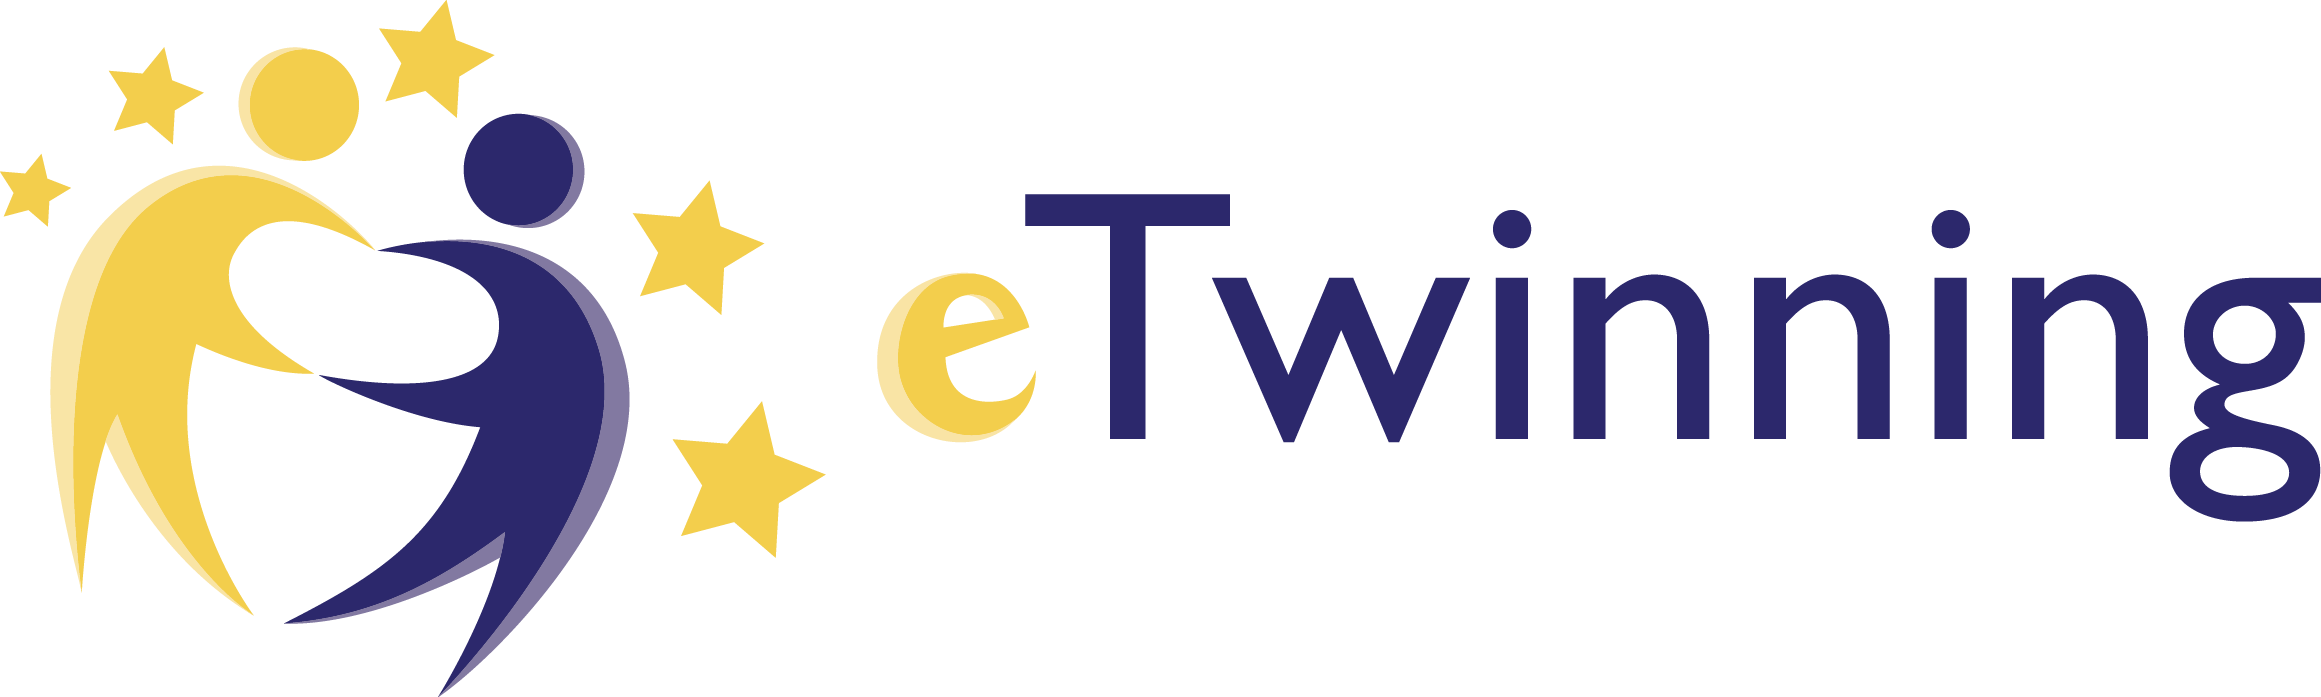 etwinning_logo.png